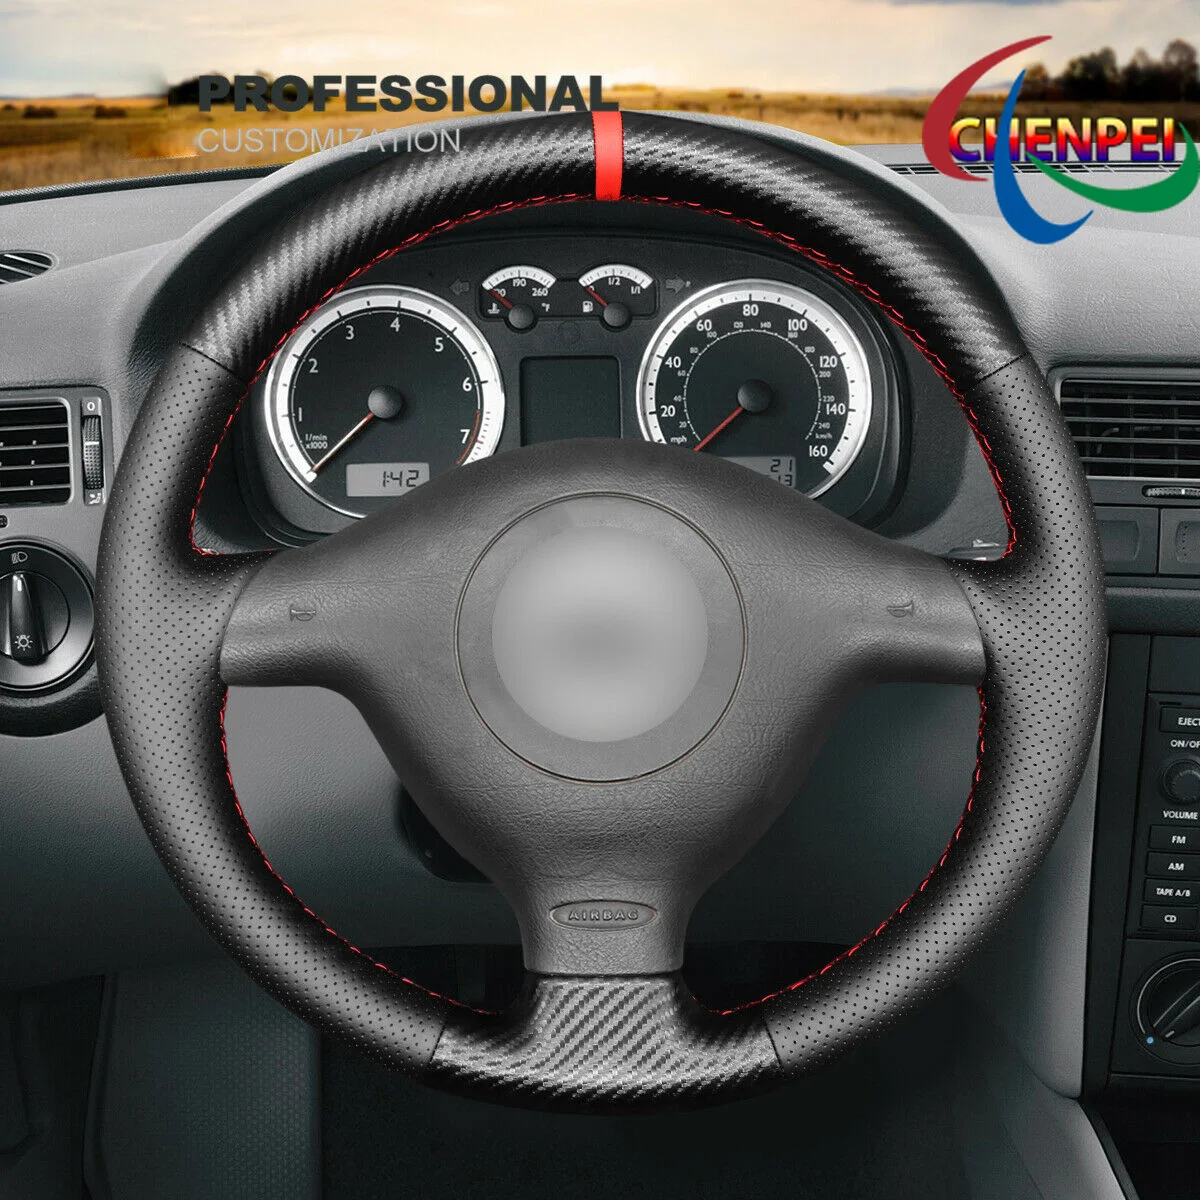 

DIY Hand-Sewn Carbon Fiber Black Leather Car Steering Wheel Cover For VW Cabrio GTI Jetta (GLI) Car Interior Accessories